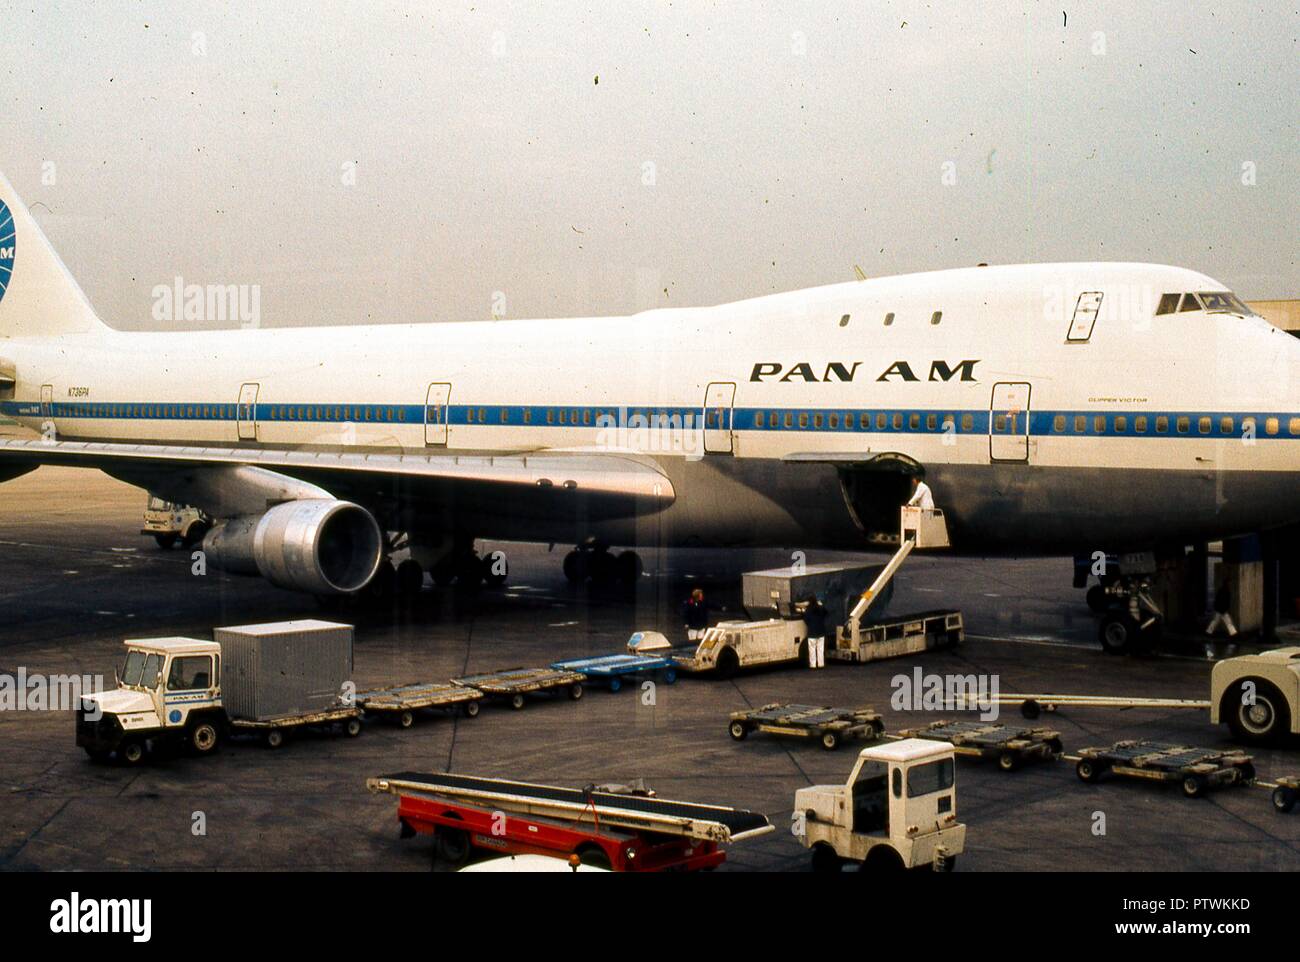 Portrait der "Clipper Victor", ein Pan American World Airways 747 Jet Flugzeug am Terminal Gate am Flughafen Heathrow geparkt, außerhalb von London, England, November, 1973. Gepäckabfertigung warten mit ihren Leerlauf Gepäckträger Lkw unter dem Flugzeug öffnen Laderaum Tür. Diese bestimmten Luftfahrzeug, einem Boening 747-121 mit der Registrierungsnummer N 736 PA, hat eine berüchtigte doppelte Auszeichnung: Er bedient den Eröffnungs-Pan Am kommerziellen 747 Jet Flug am 22. Januar 1970, und sieben Jahre später wurde im Flughafen Teneriffa Disaster" vom 27. März 1977, die tödlichste Unfall in der Geschichte der Luftfahrt zerstört Stockfoto